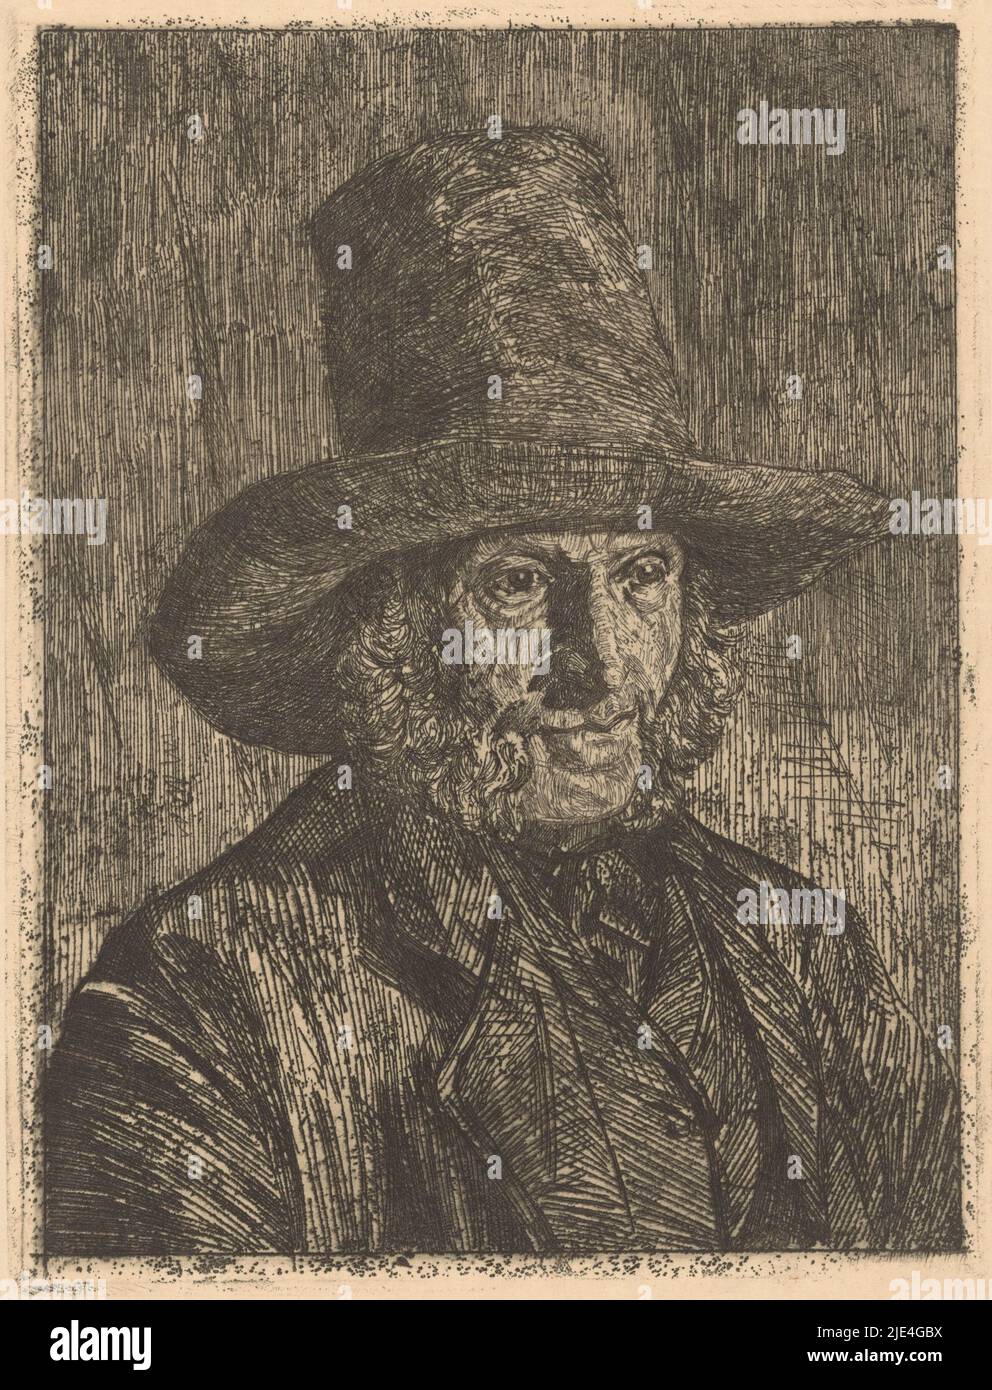 Portrait d'un homme inconnu, Martinus van Regteren Altena, 1876 - 1908, l'homme porte un chapeau et a des pattes., Imprimeur: Martinus van Regteren Altena, 1876 - 1908, papier, gravure, h 250 mm × l 190 mm Banque D'Images